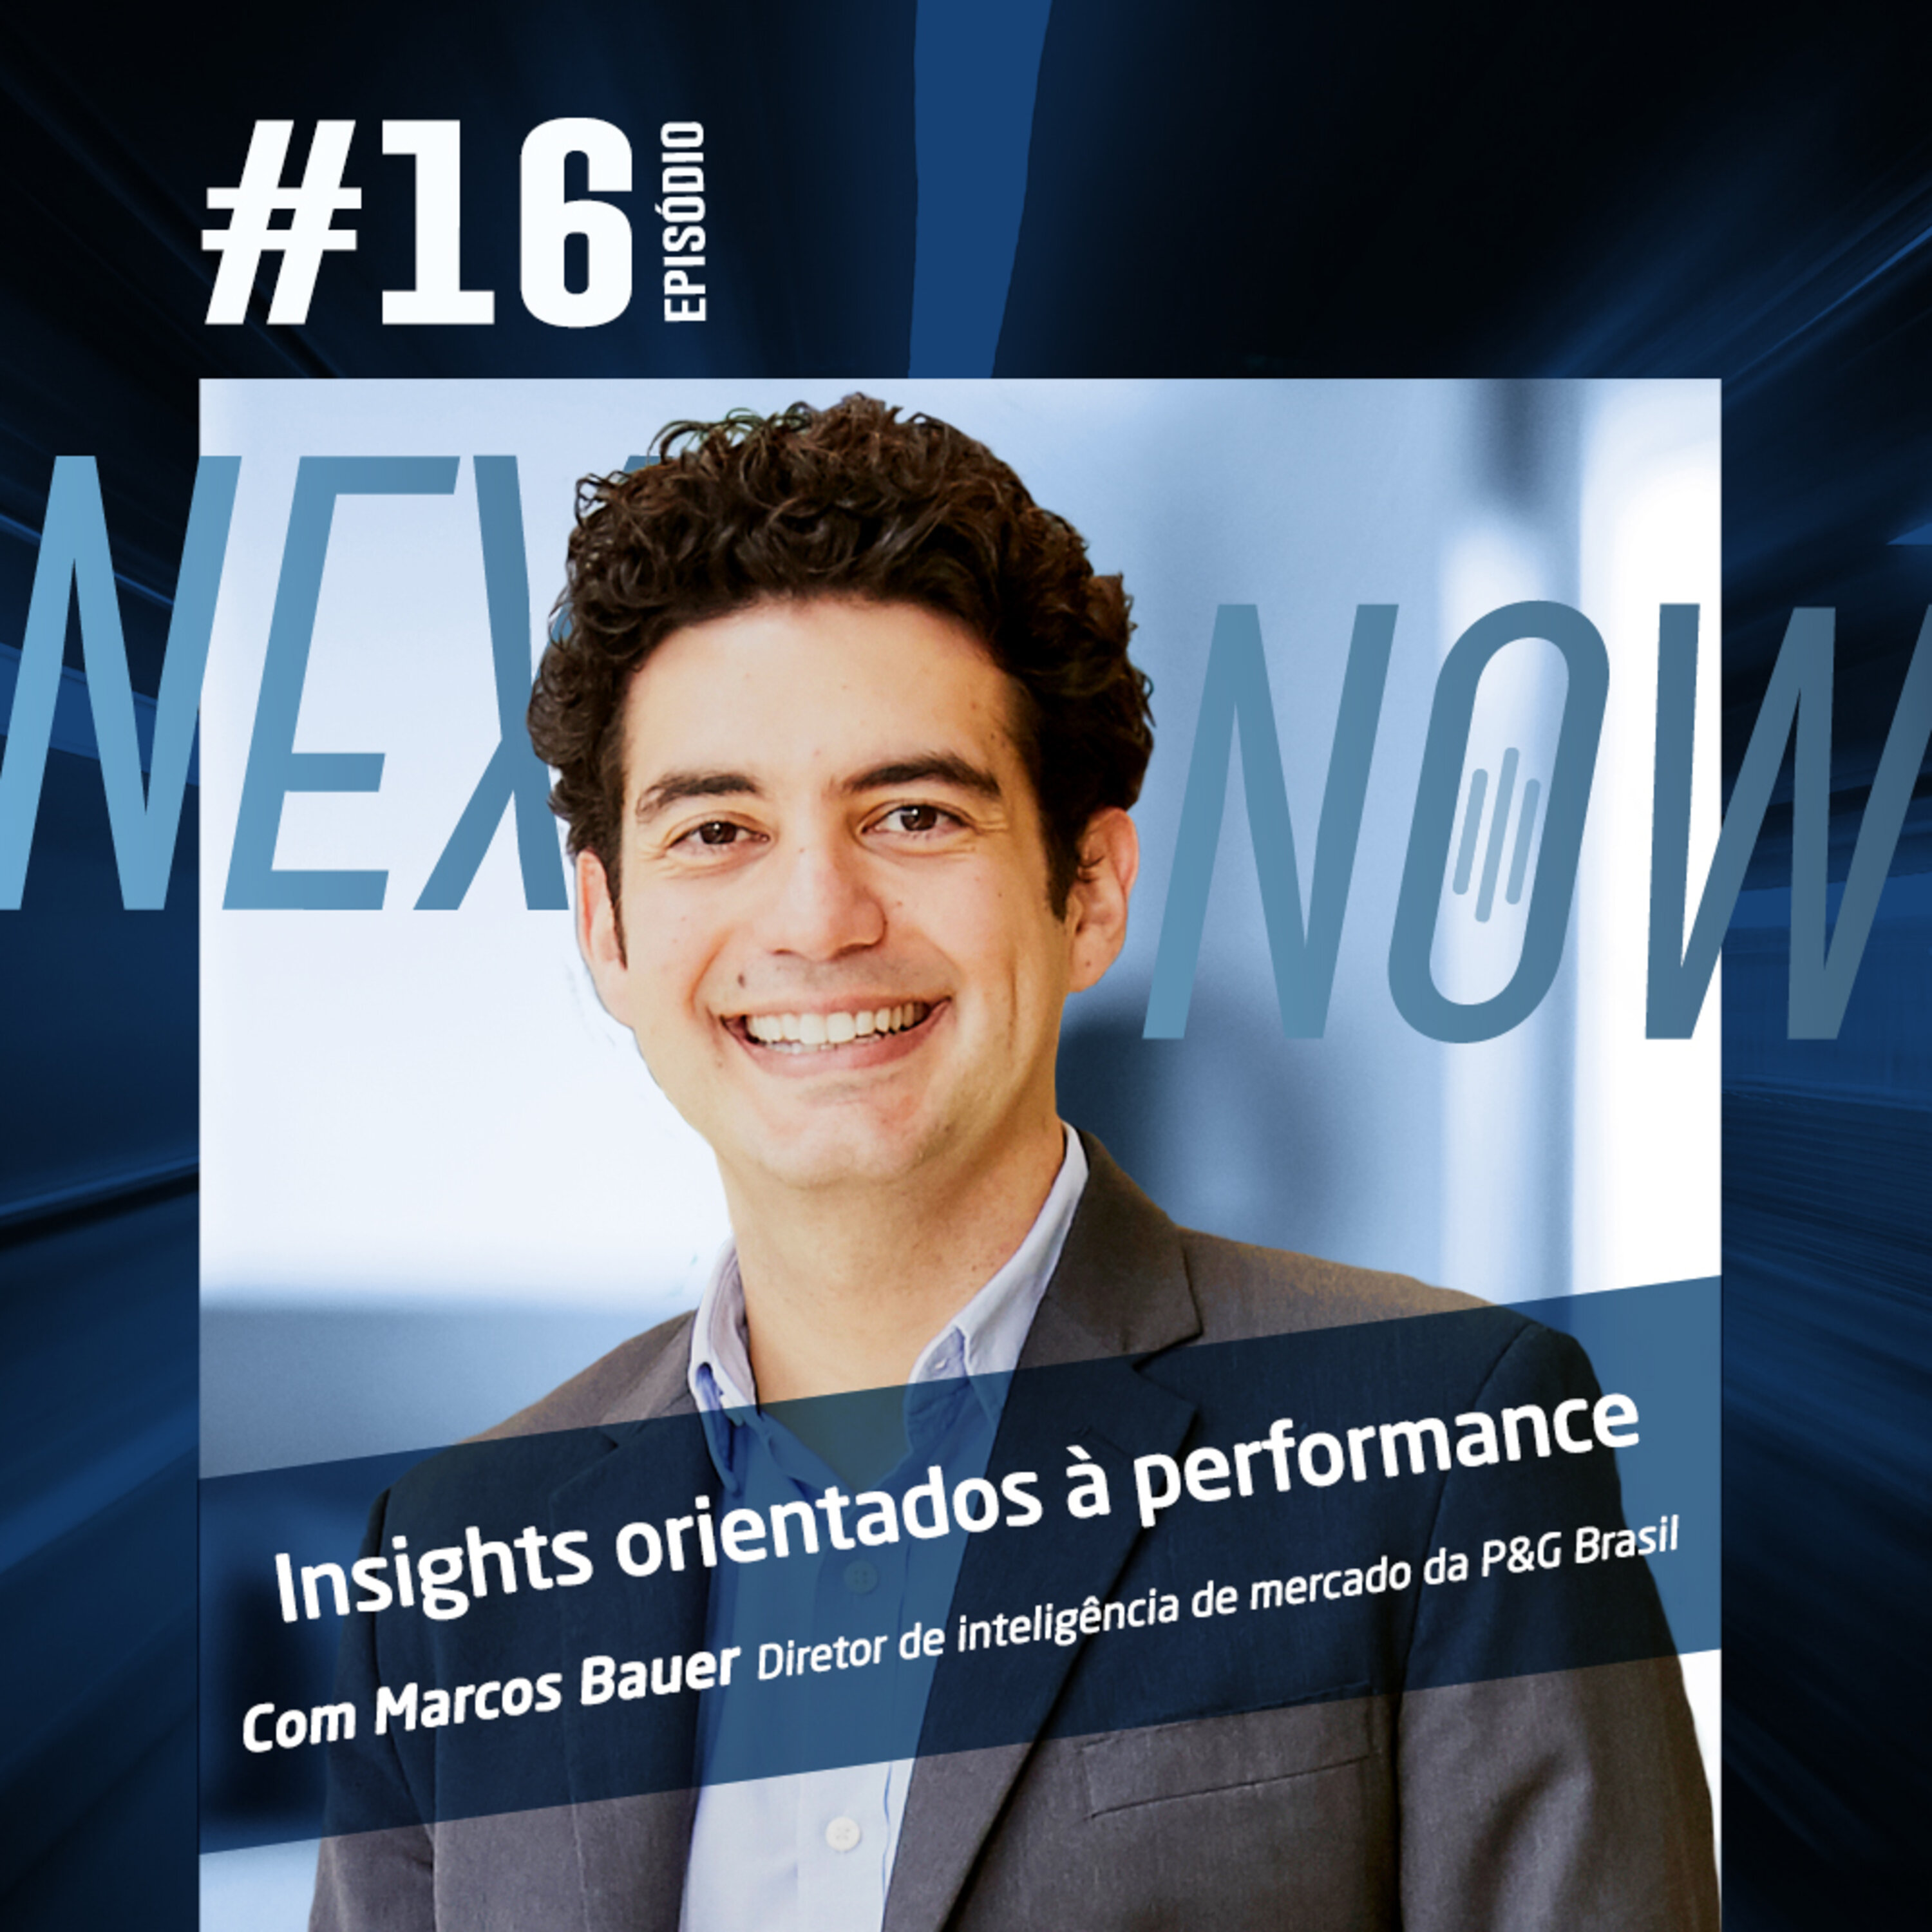 Next, Now #16| Como direcionar insights na melhora de performance com Marcos Bauer, diretor de inteligência de mercado da P&G Brasil